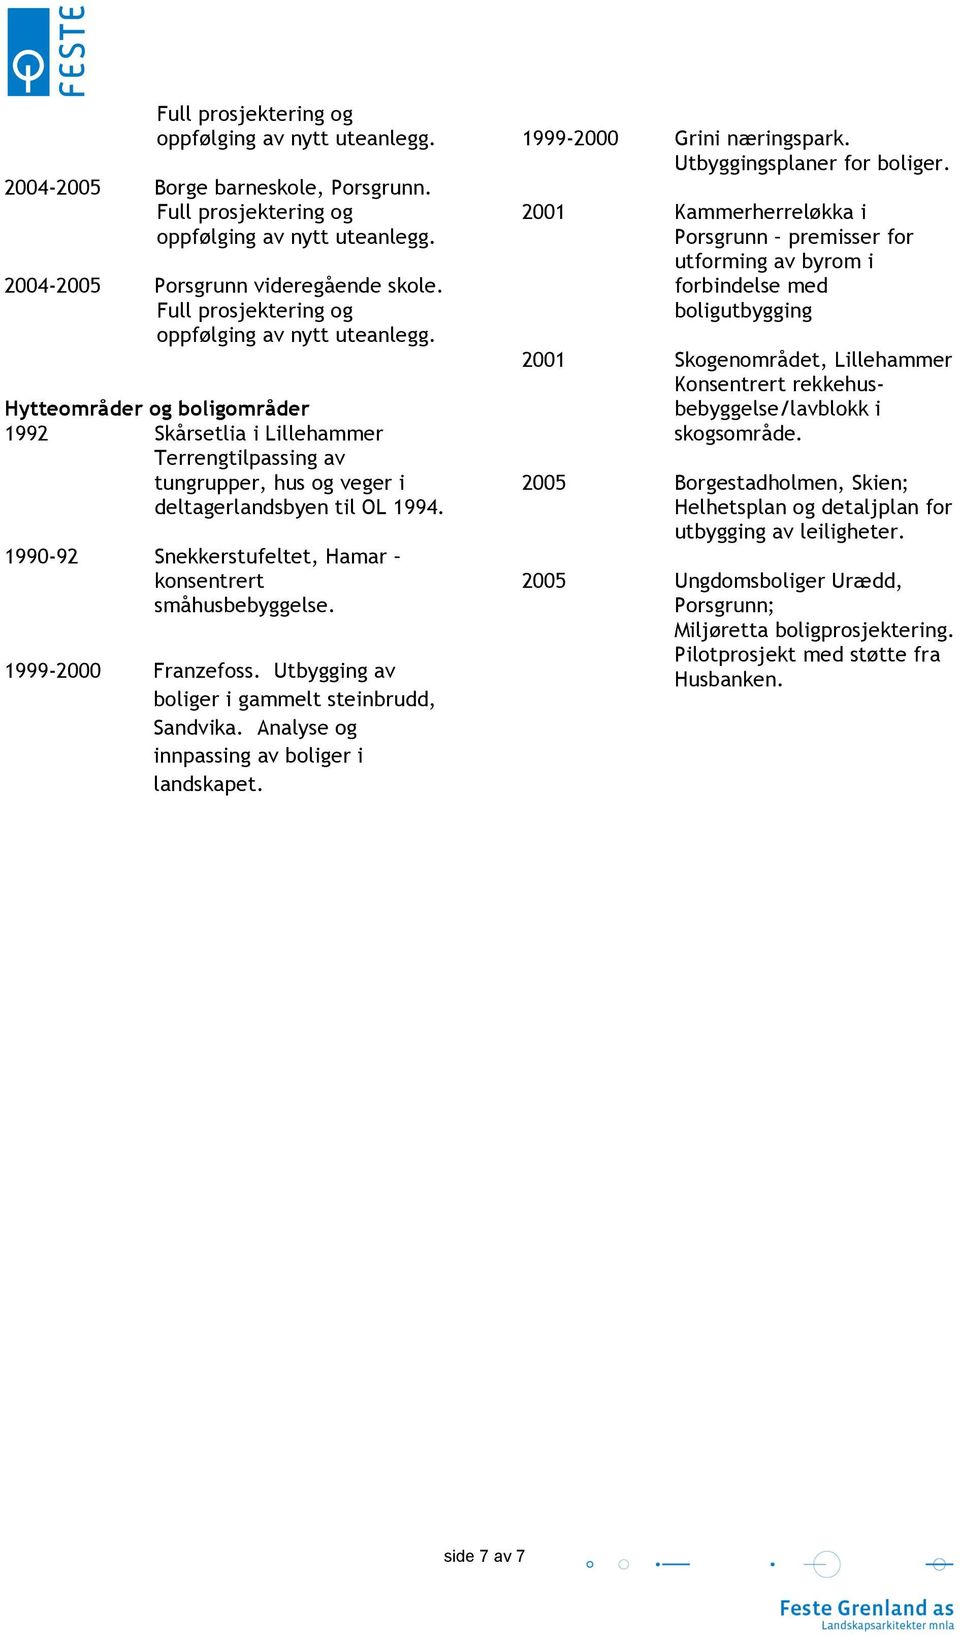 1990-92 Snekkerstufeltet, Hamar konsentrert småhusbebyggelse. 1999-2000 Franzefoss. Utbygging av boliger i gammelt steinbrudd, Sandvika. Analyse og innpassing av boliger i landskapet.